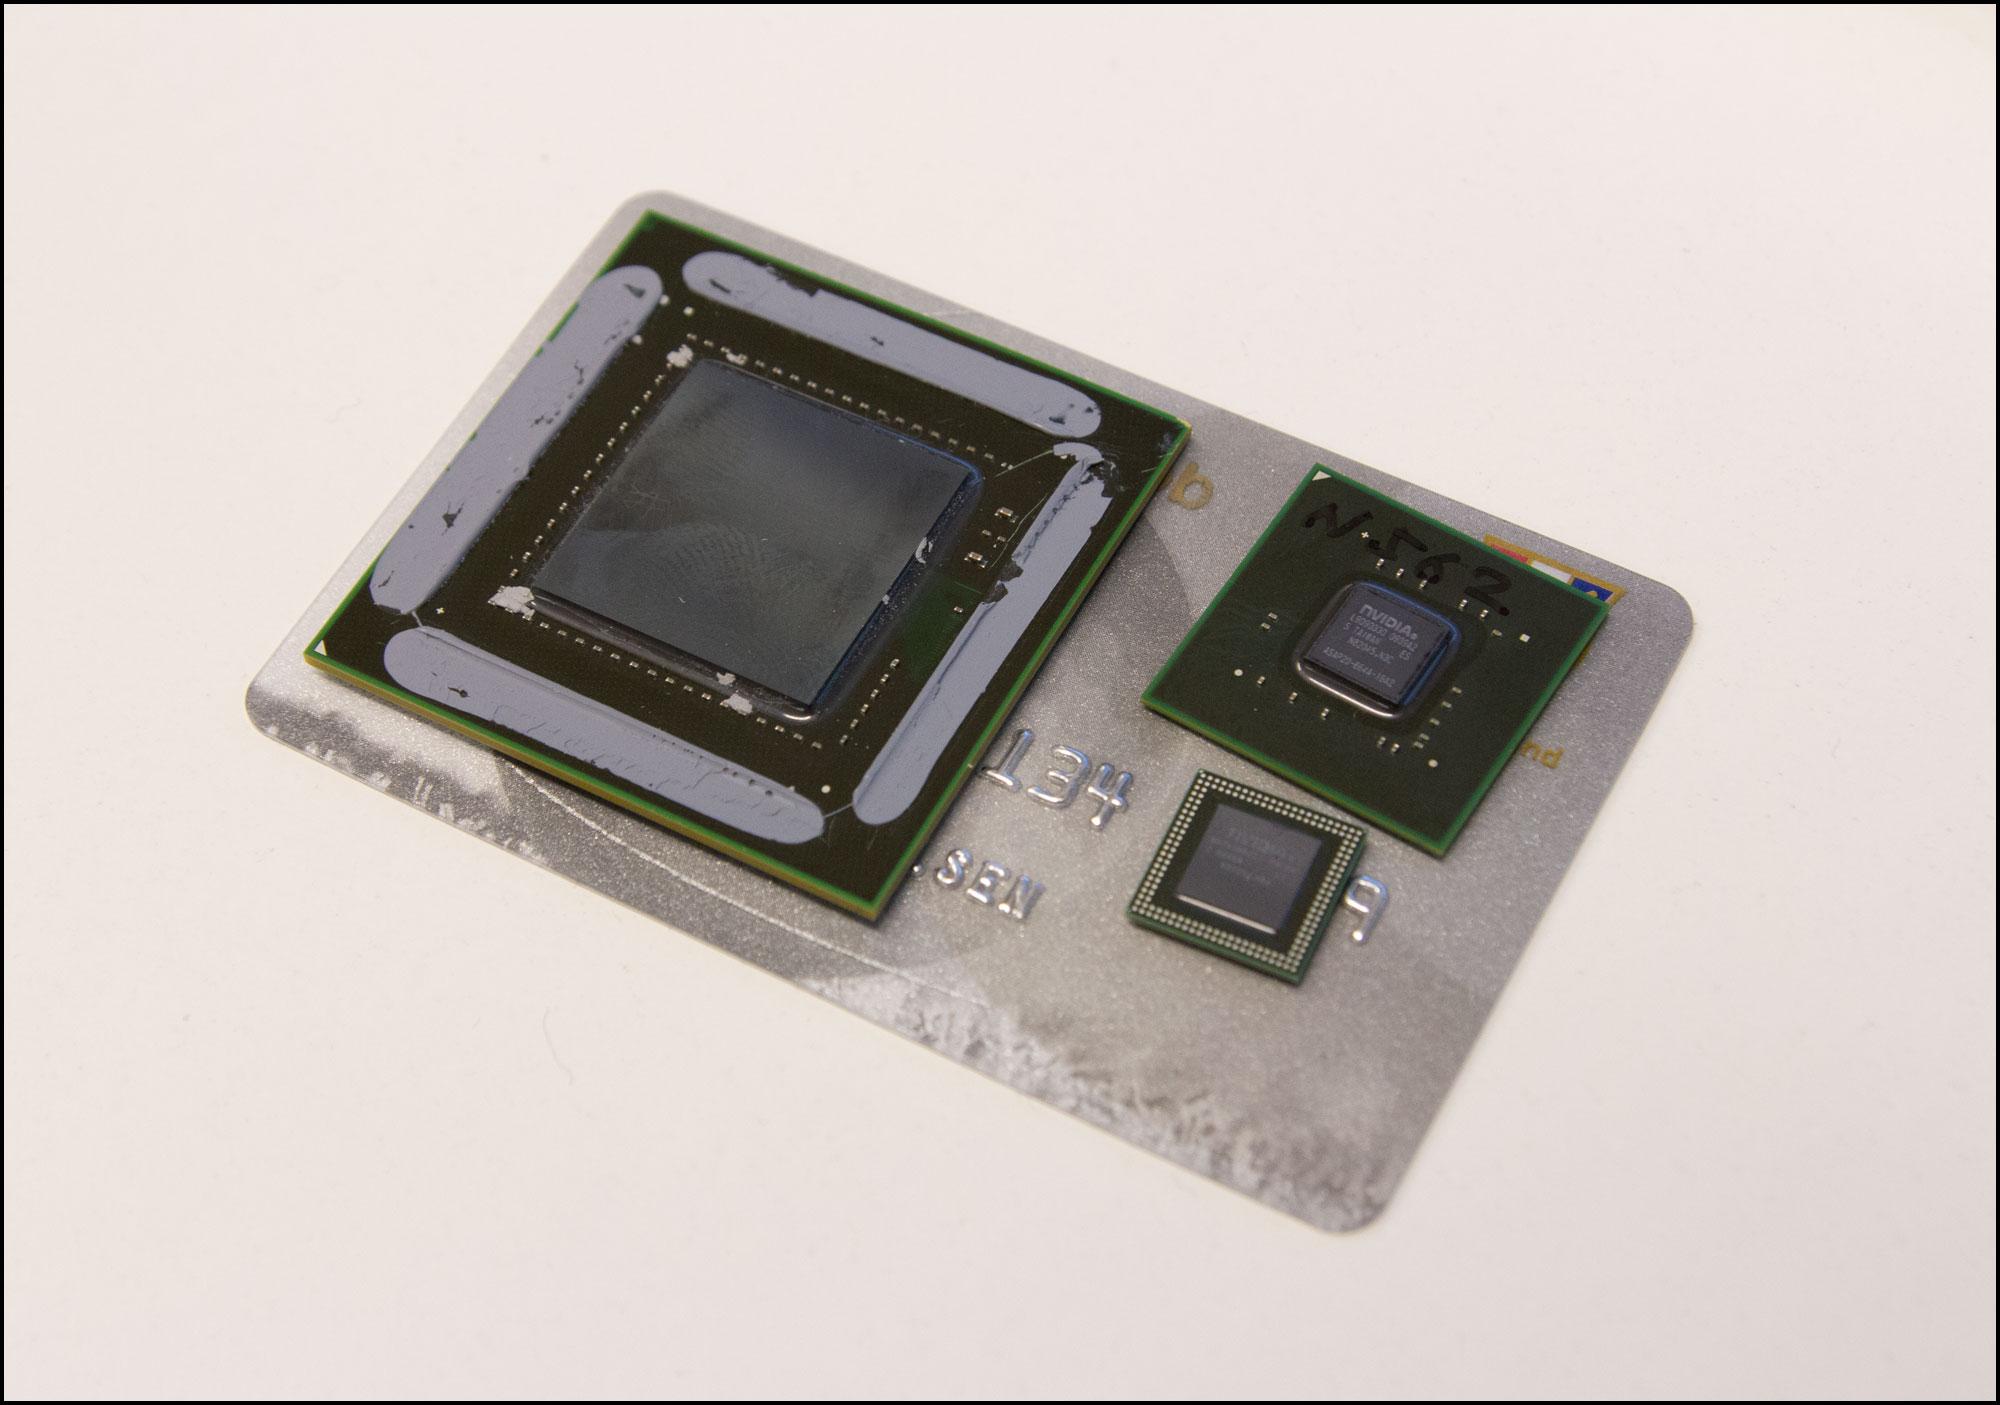 Grafikkprosessorer er små saker. Kjernen til GeForce GTX 480 til venstre, Tegra 3 i to varianter til høyre.